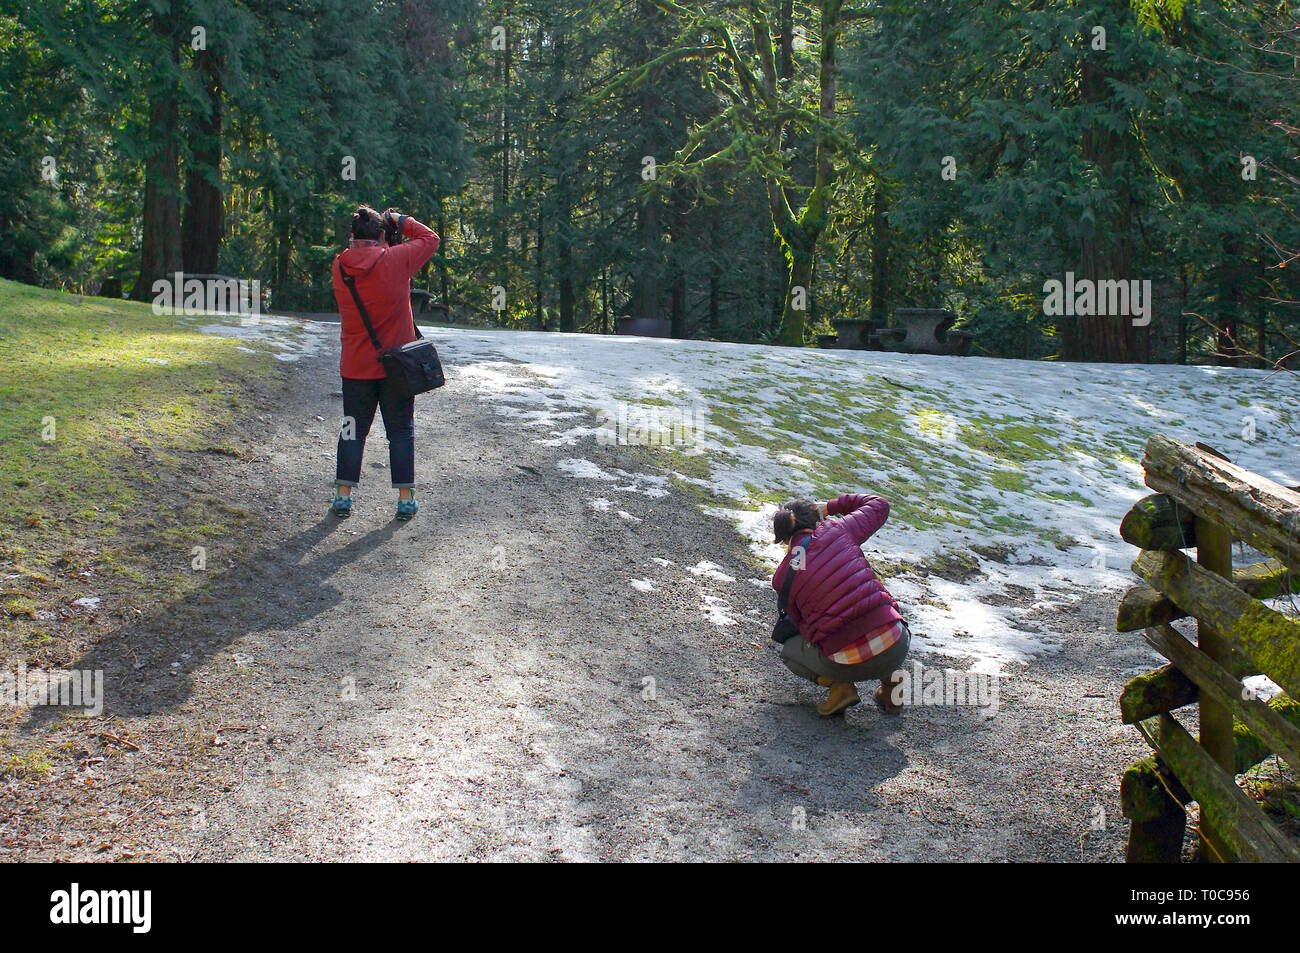 Deux jeunes femmes asiatiques photographier la nature dans un parc boisé avec de la neige au sol. Banque D'Images